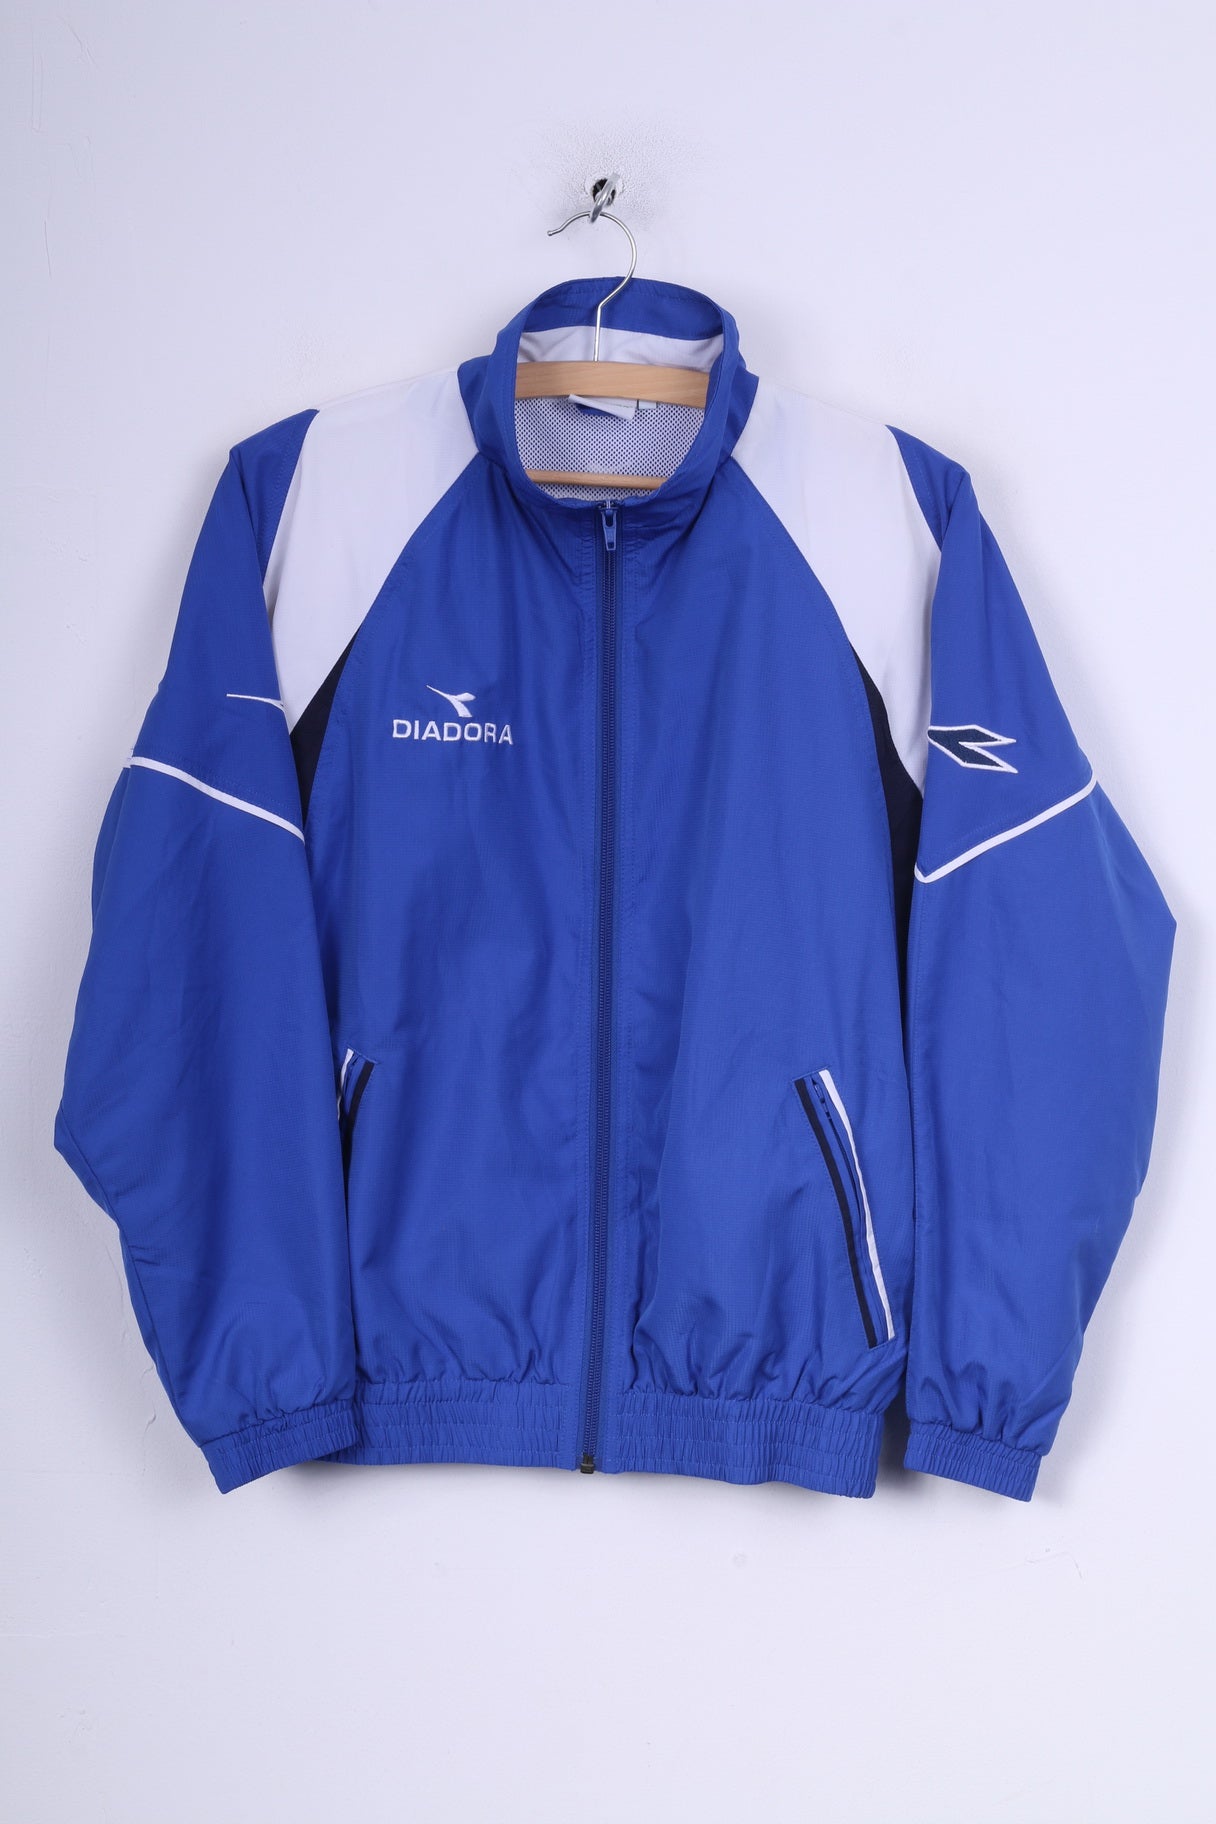 Diadora Boys 170  Jacket Blue Full Zipper Sport Training Lightweight